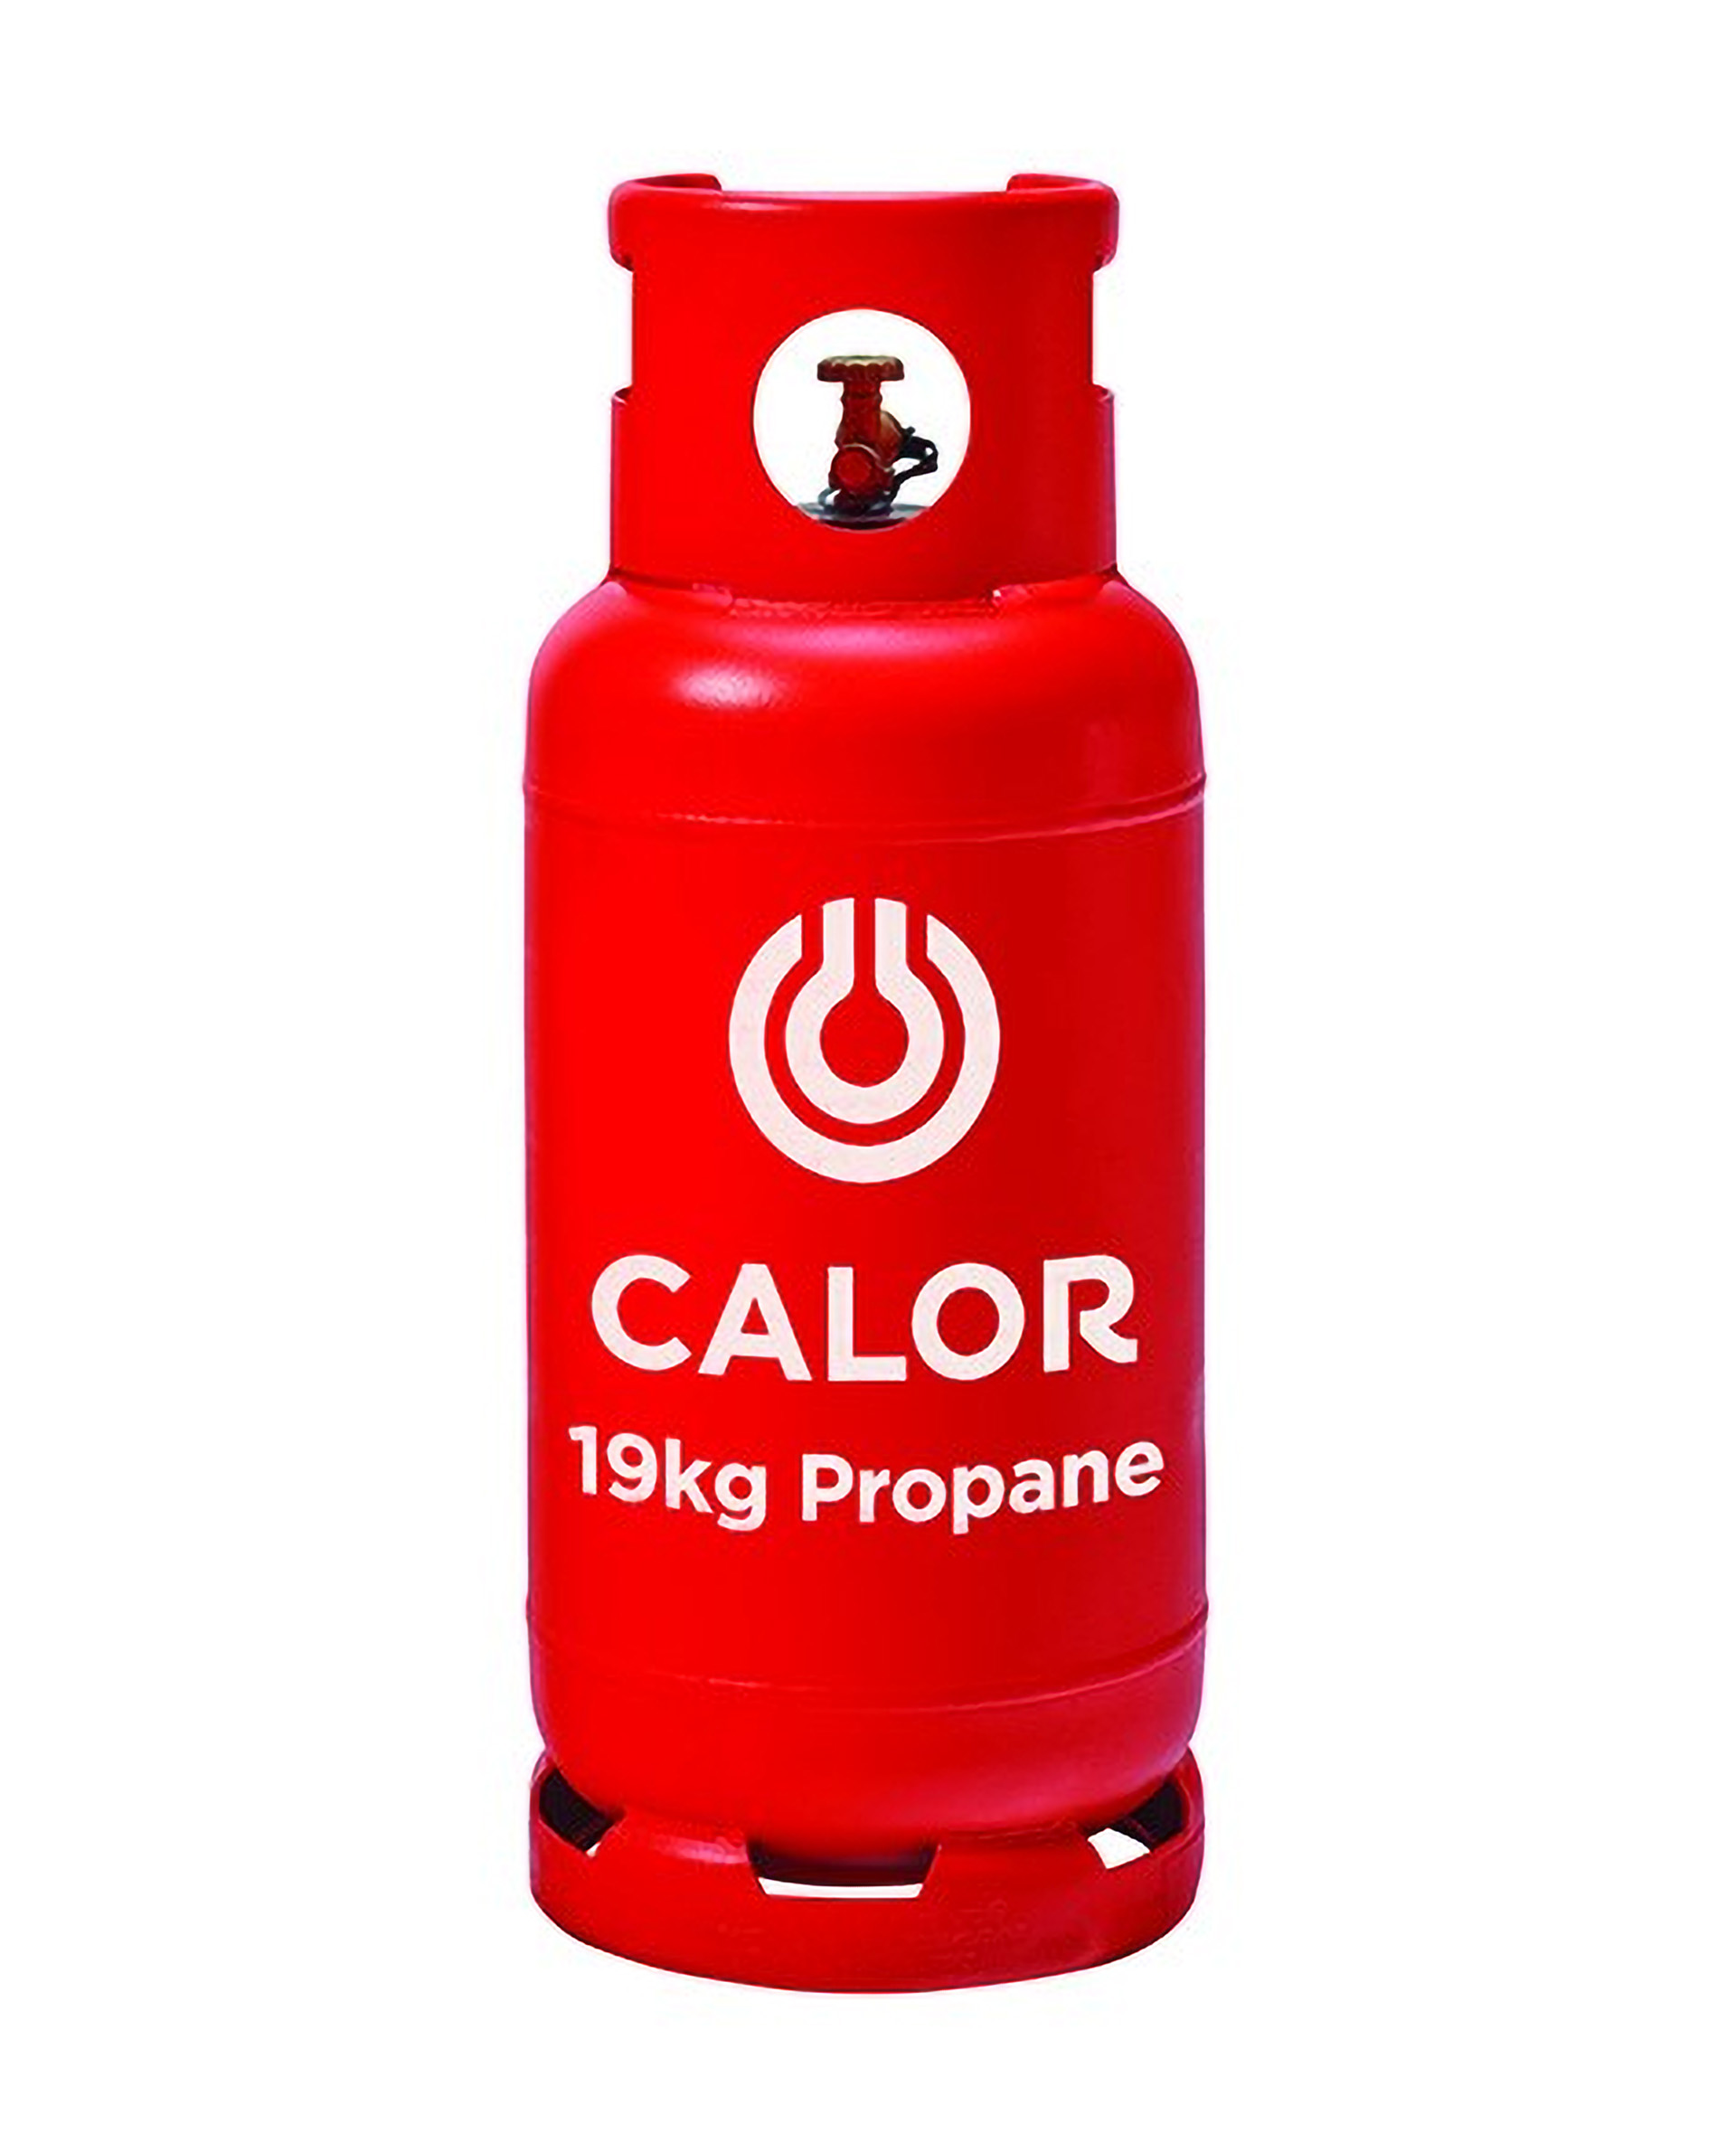 19kg Propane Calor Gas Bottle